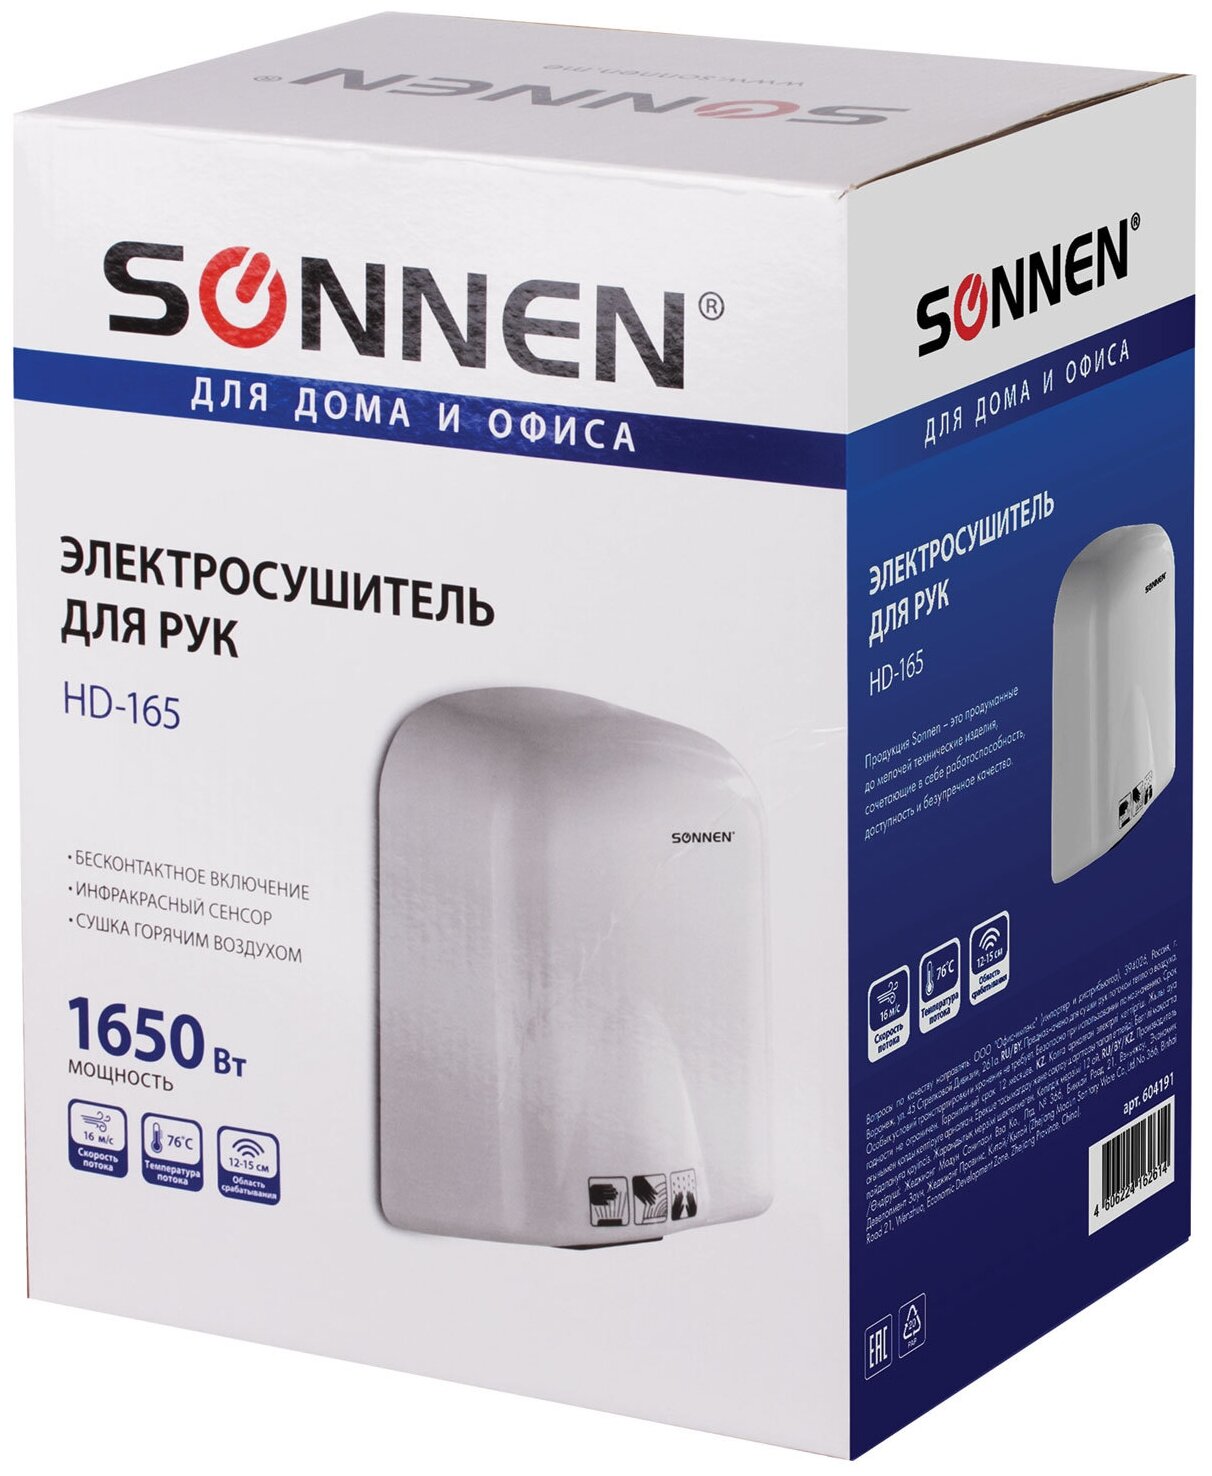 Сушилка для рук SONNEN HD-165, 1650 Вт, пластиковый корпус, белая, 604191. 604191 - фотография № 2